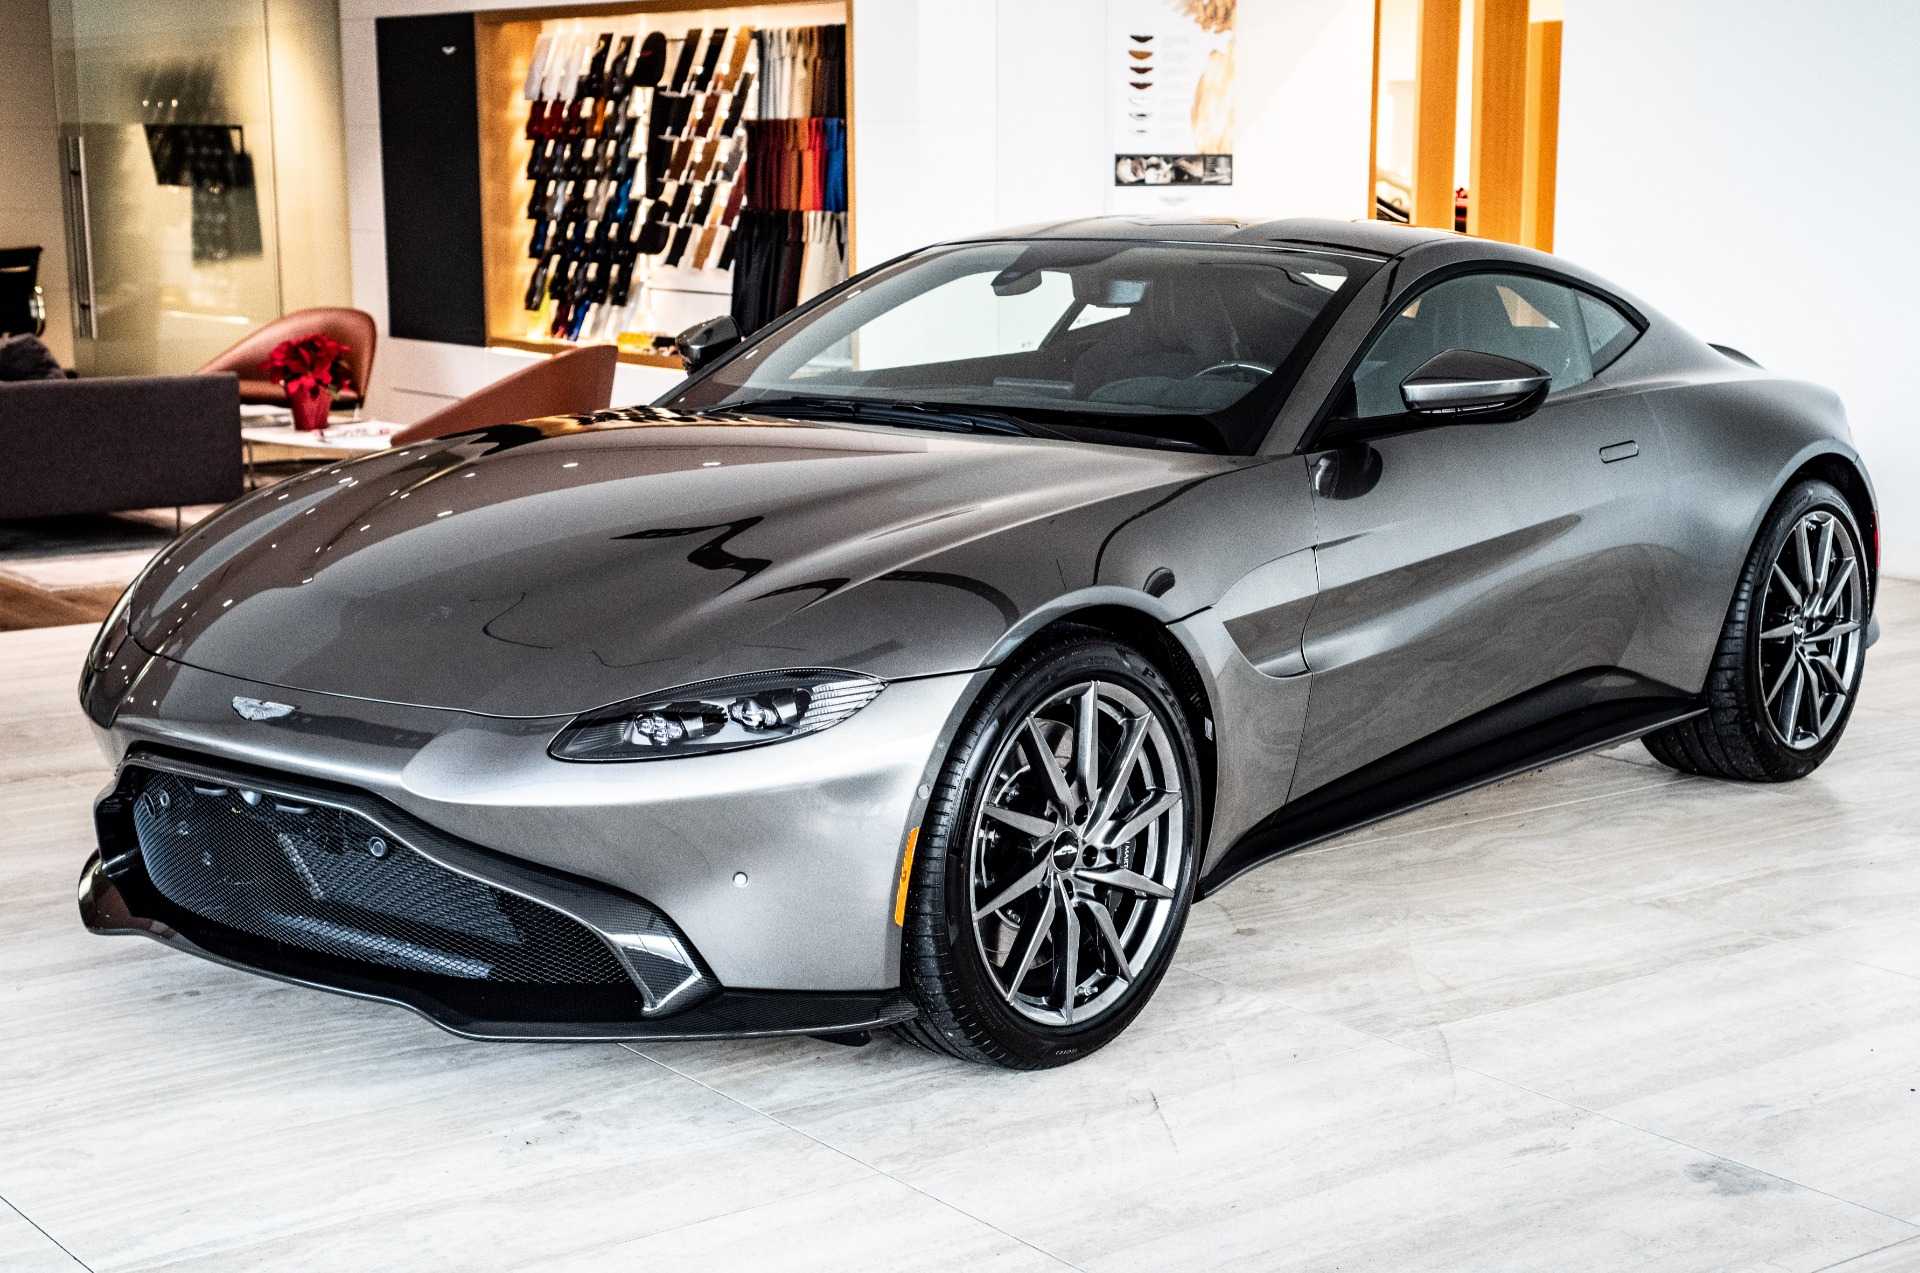 Компания Aston Martin официально представила купе Vantage второго поколения Новая модель получила полностью перекроенную внешность и турбомотор от AMG